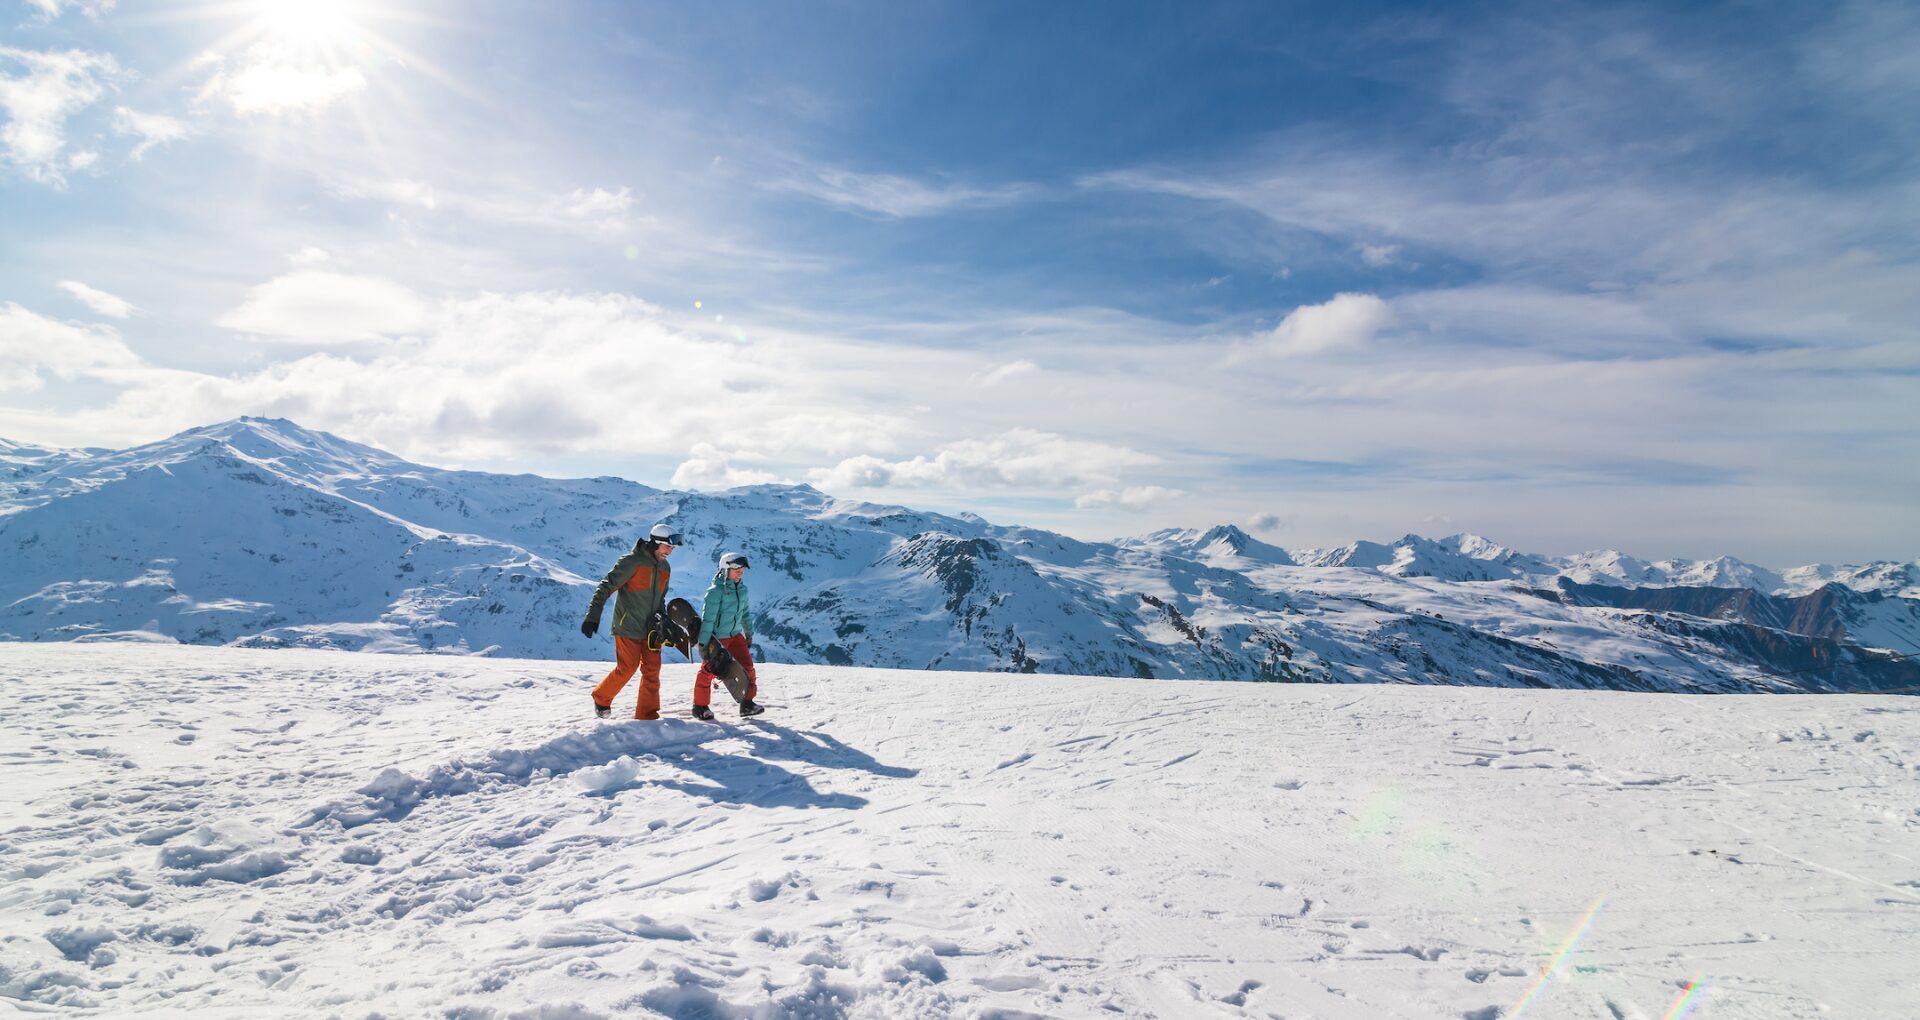 Deux skieurs marchant sur les pistes de ski, avec les montagnes enneigées en arrière-plan